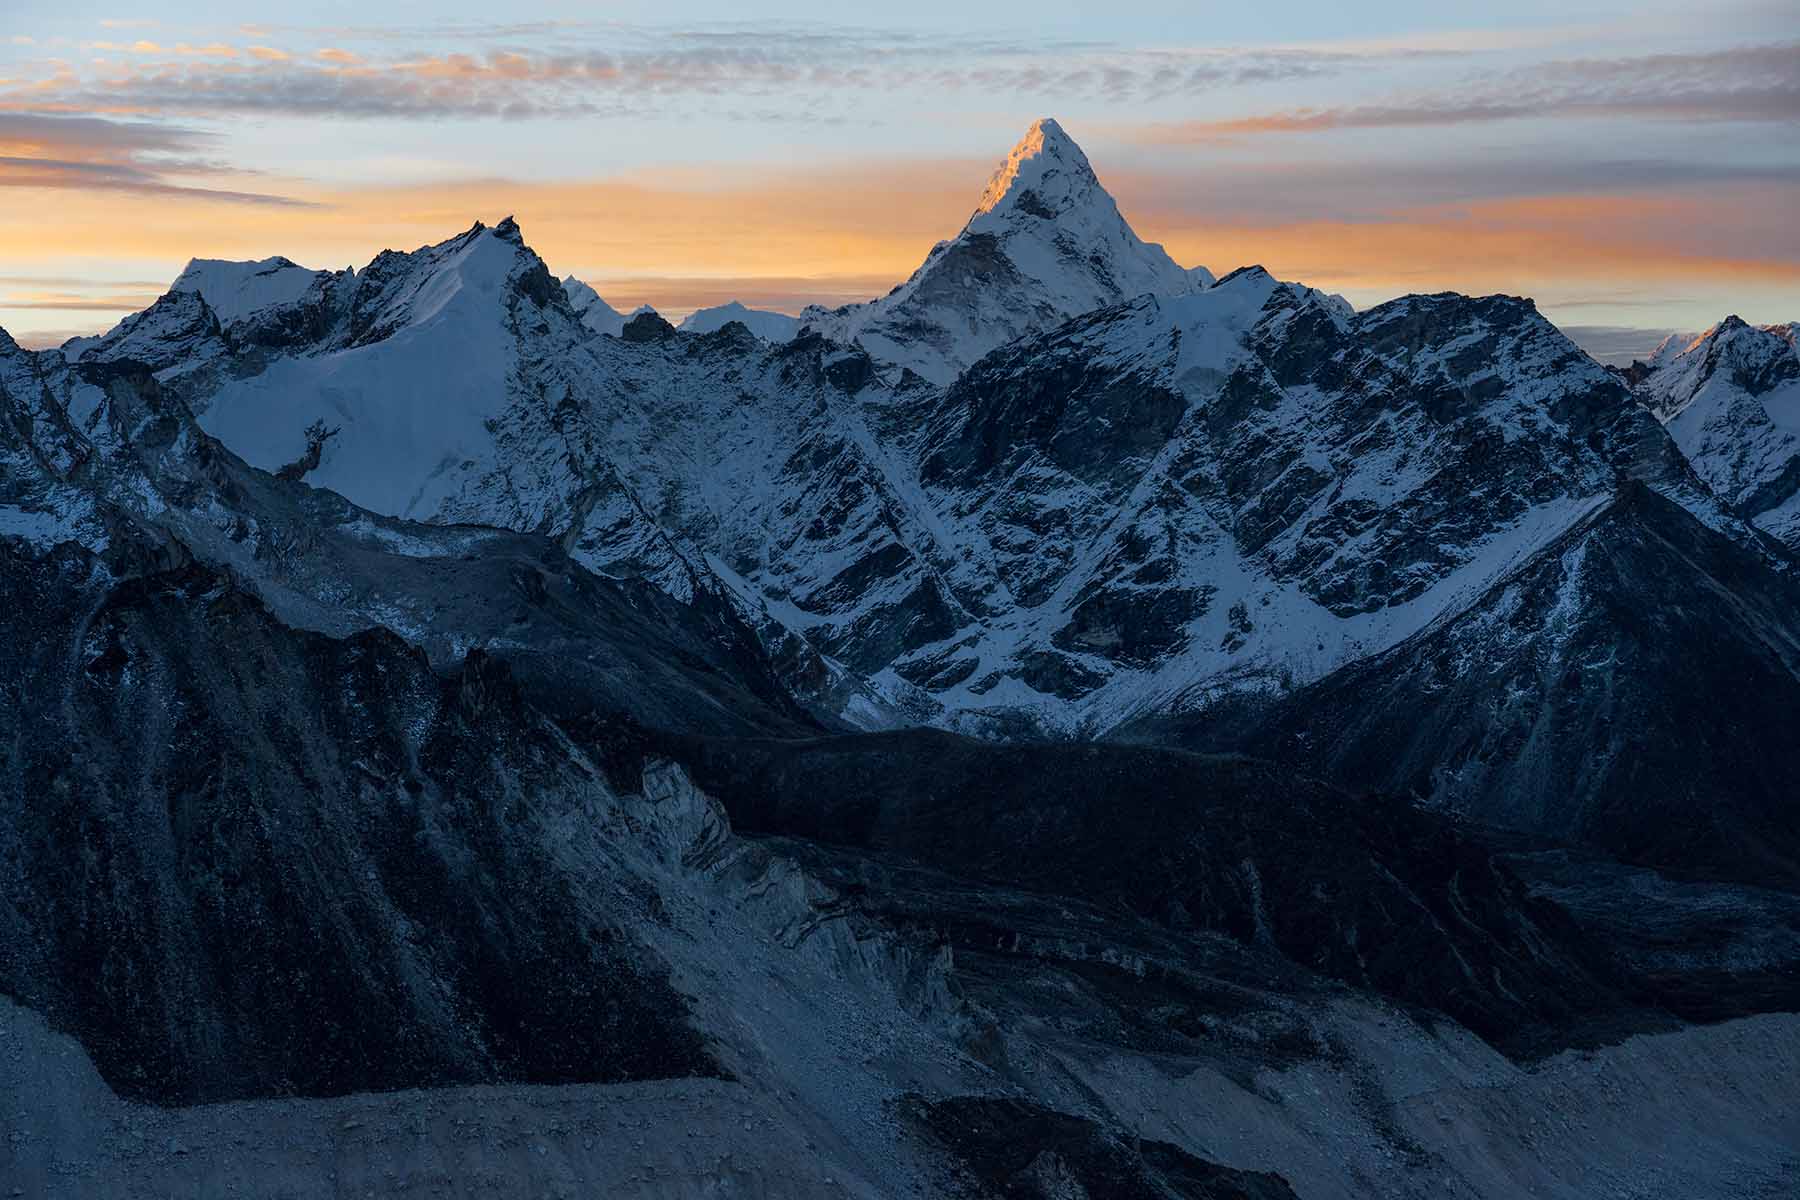 Kala Patthar Mount Everest Base Camp Trek